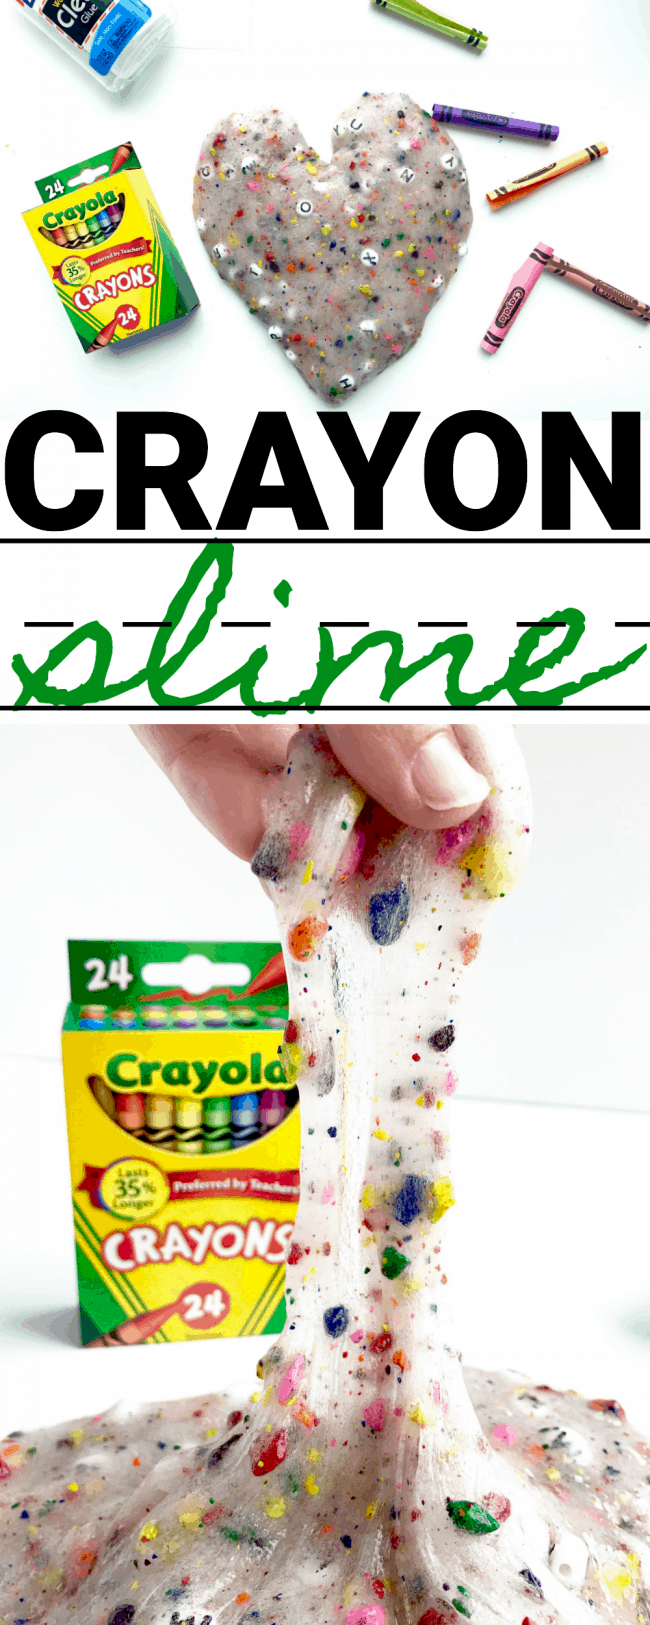 Crayon Slime